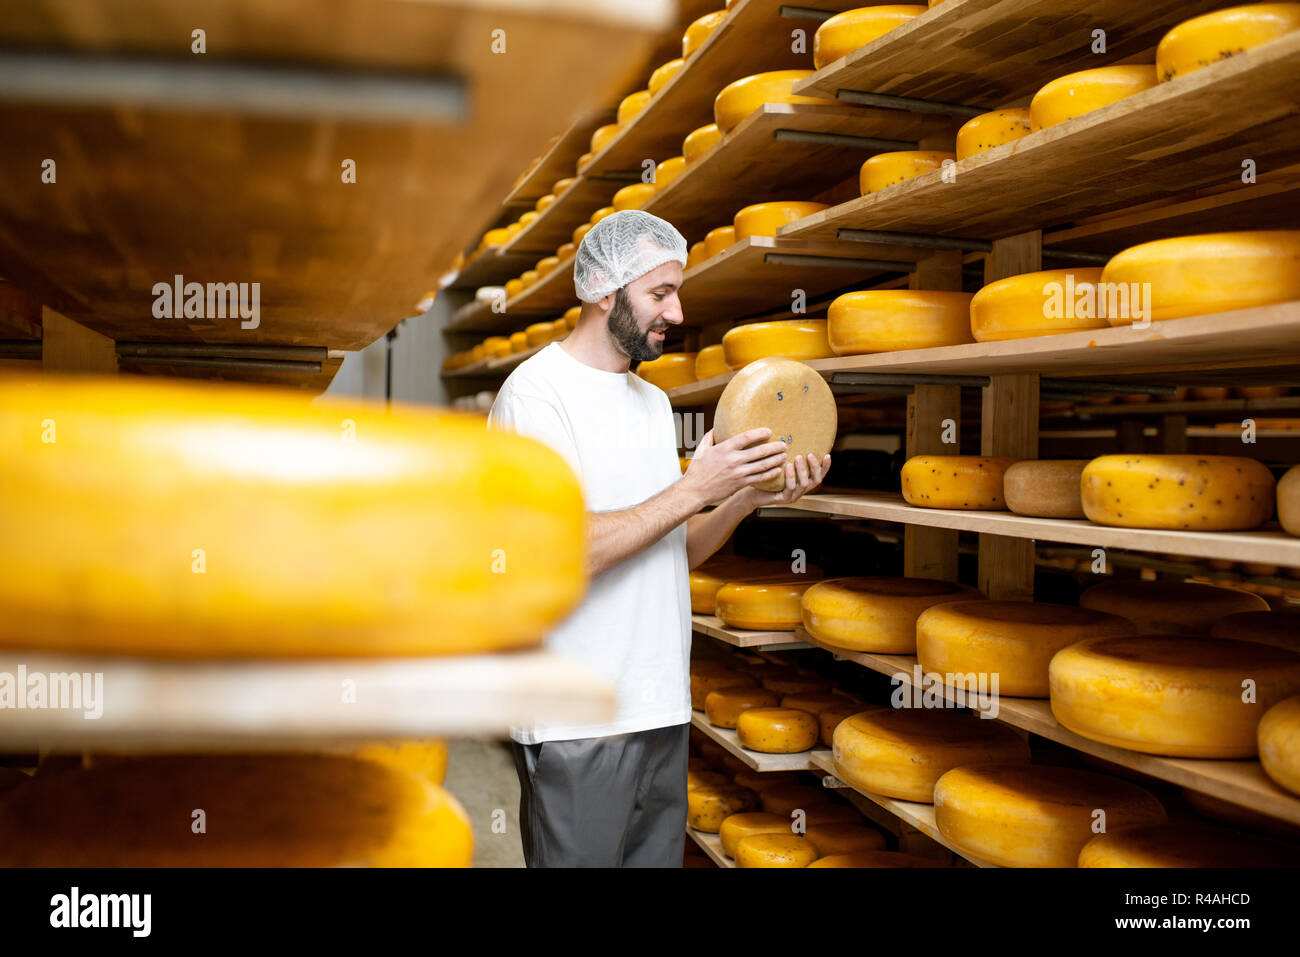 Mitarbeiter Kontrolle der Käse Qualität bei der Lagerung mit Regalen voller Käselaibe während des Alterungsprozesses Stockfoto